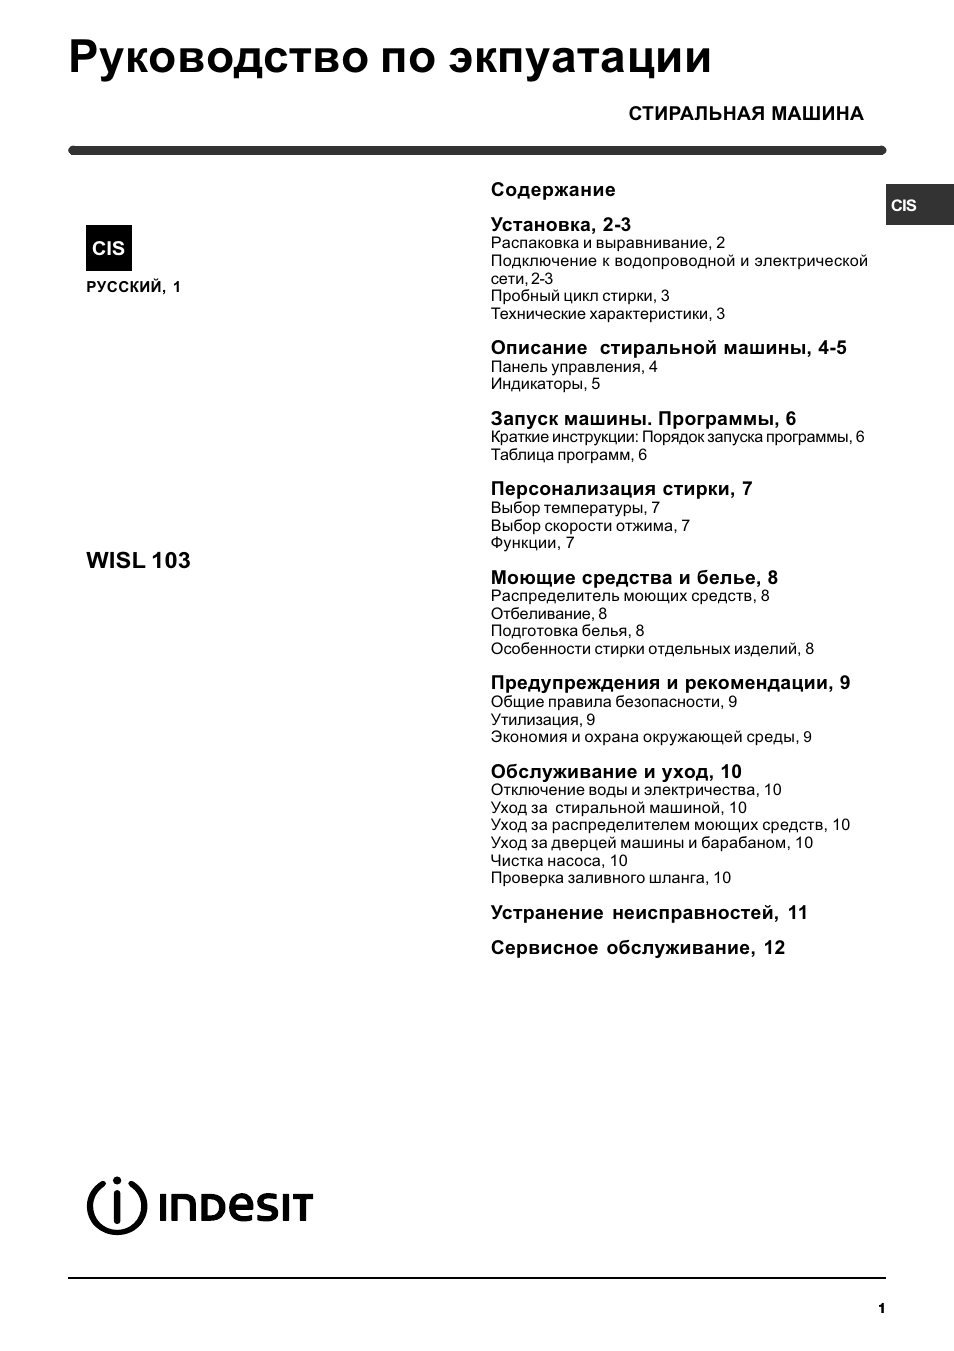 Инструкция по эксплуатации Indesit WISL 103 | 12 страниц